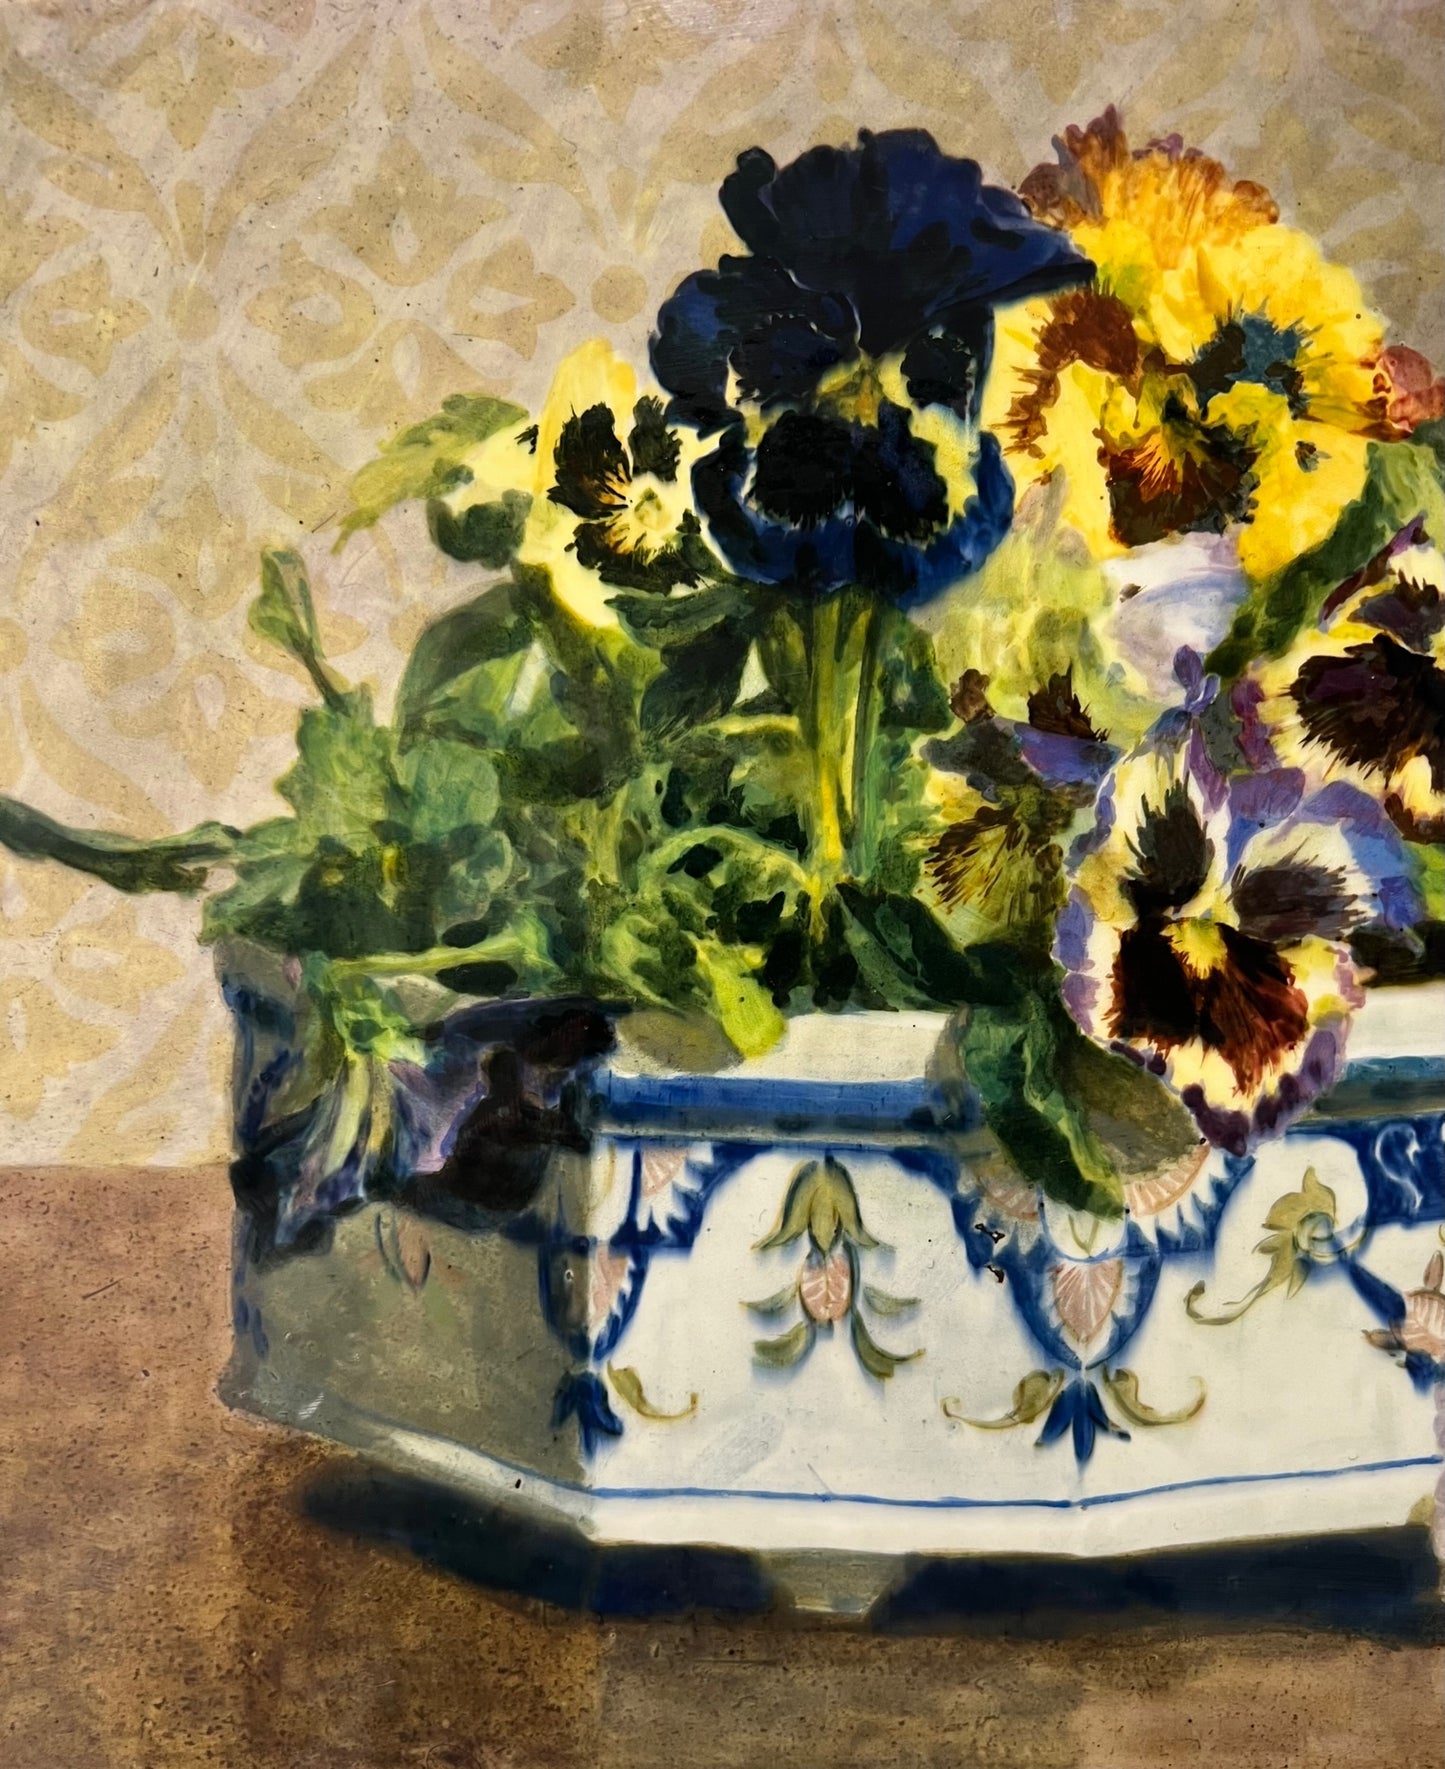 Still life Oil on ceramic panel by Gottlieb Schuller 1879 - 1959